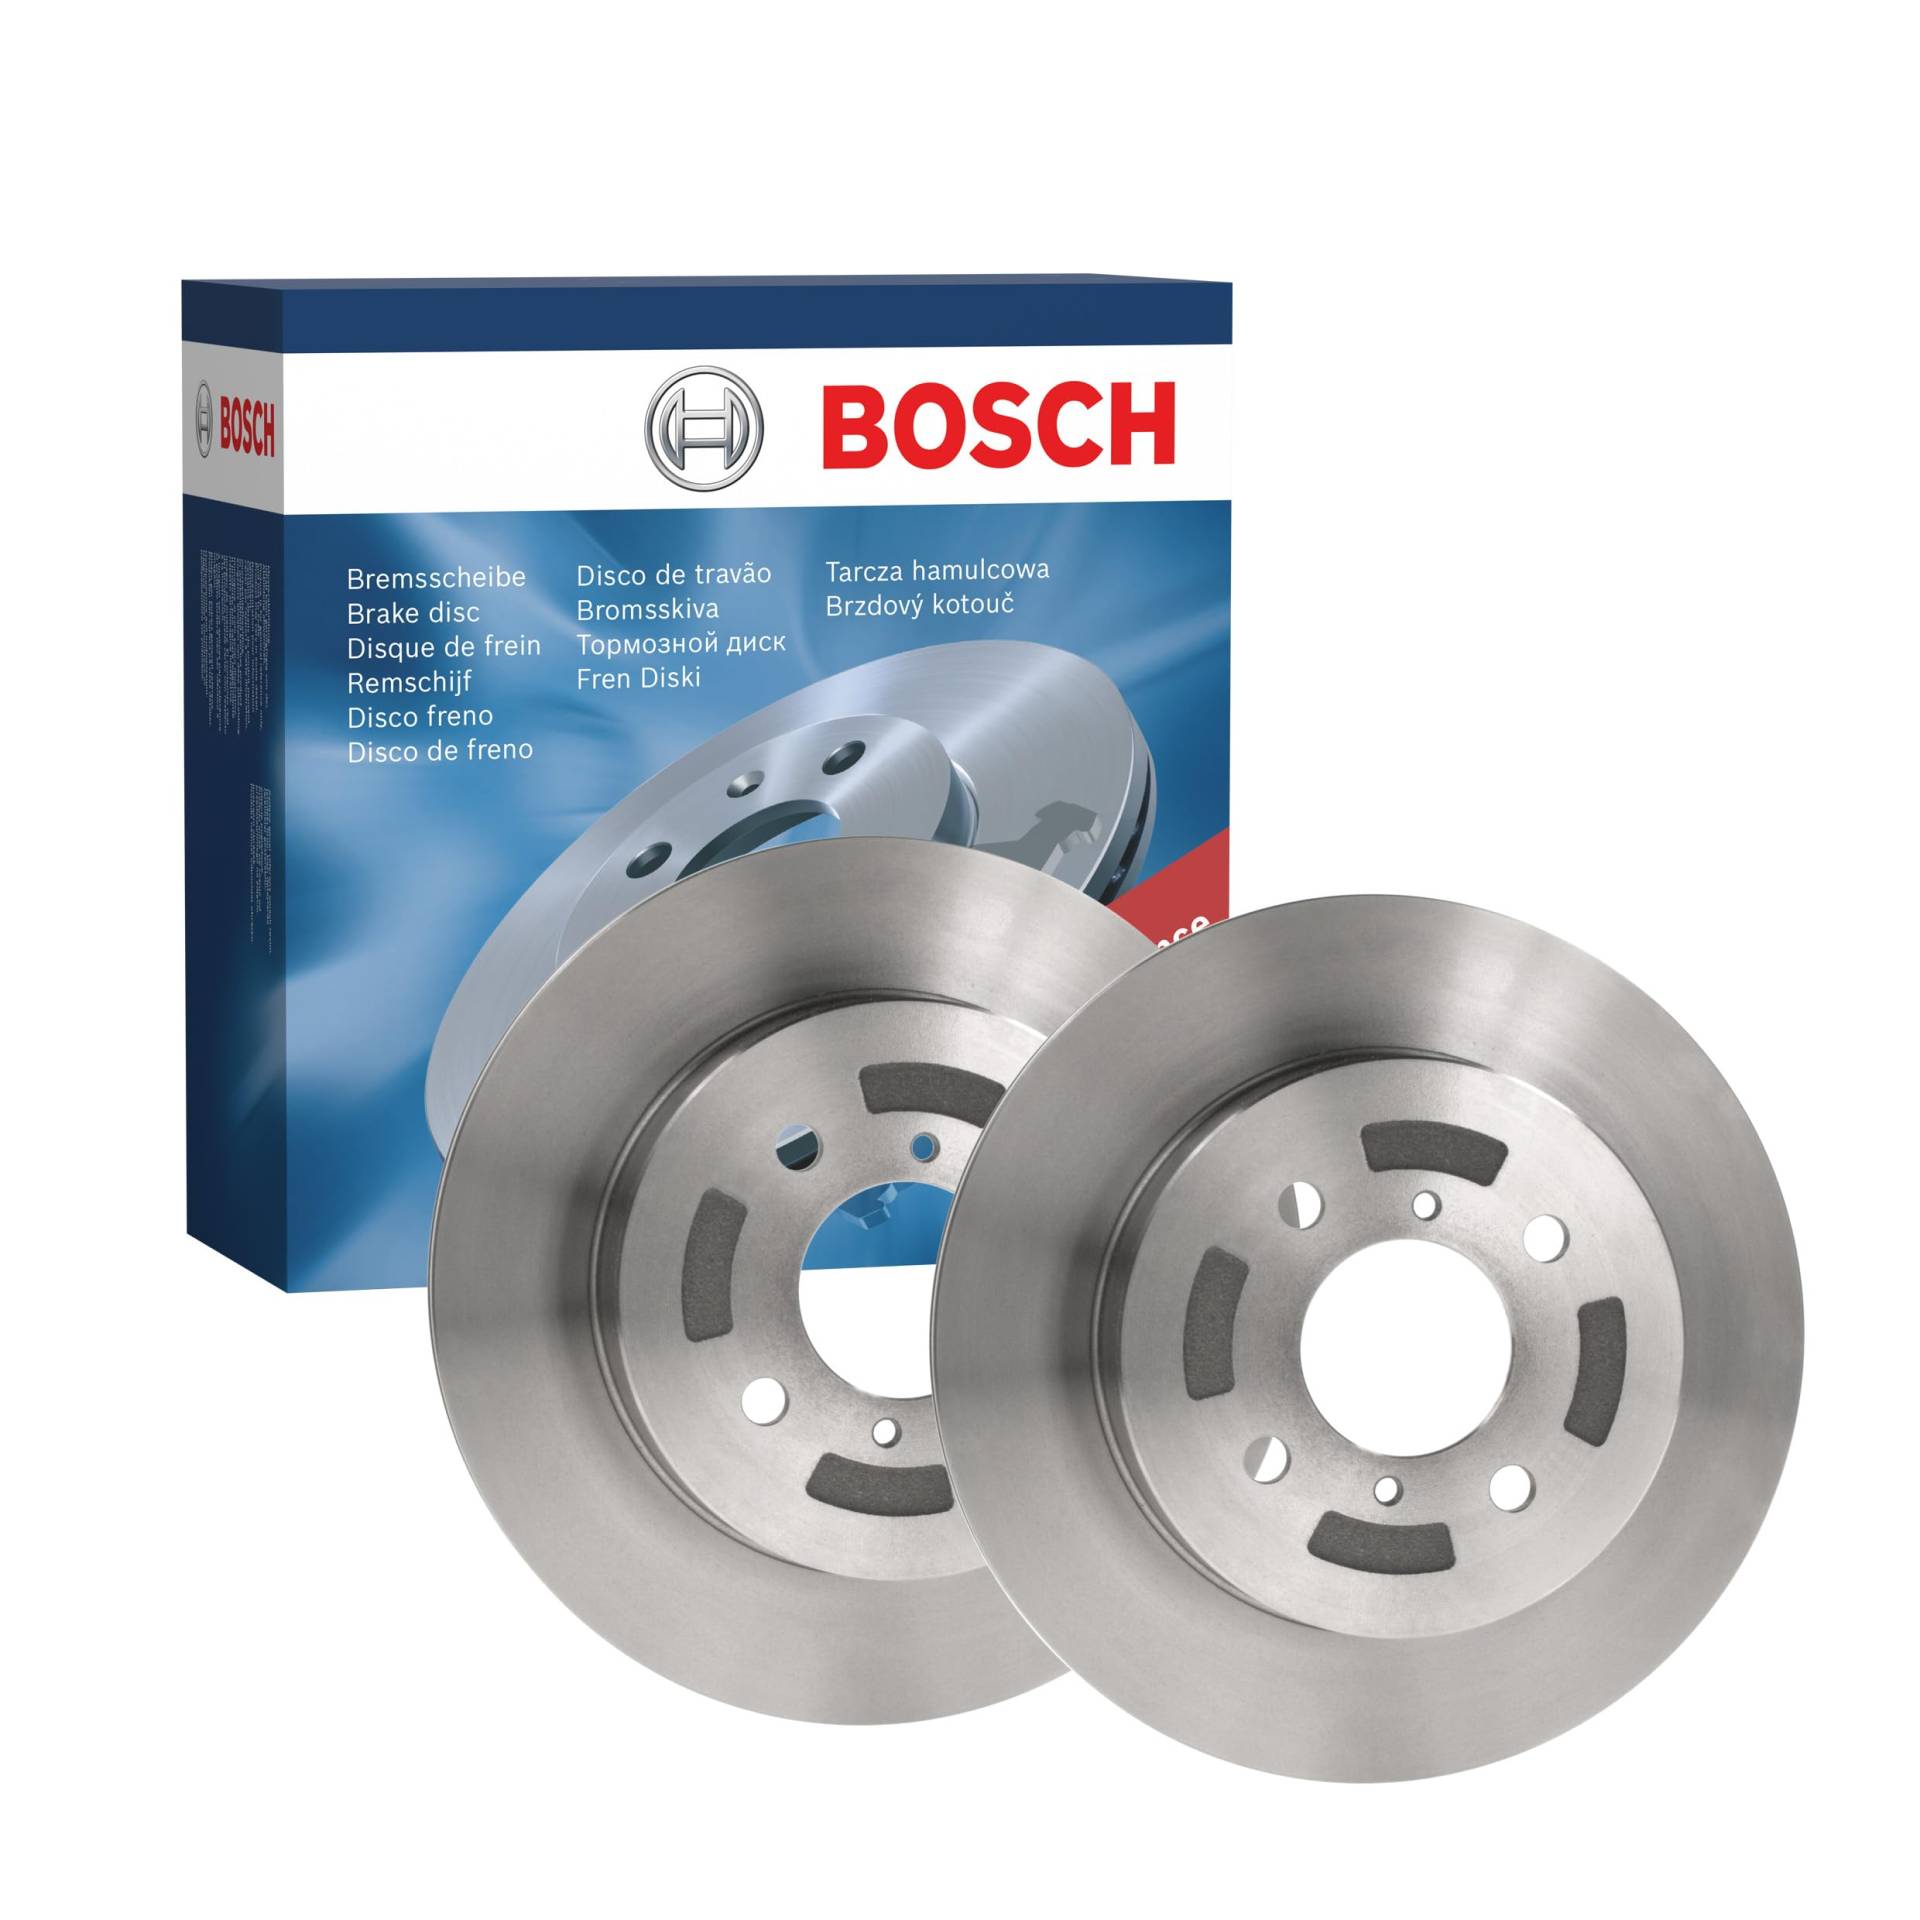 Bosch BD881 Bremsscheiben - Vorderachse - ECE-R90 Zertifizierung - zwei Bremsscheiben pro Set von Bosch Automotive